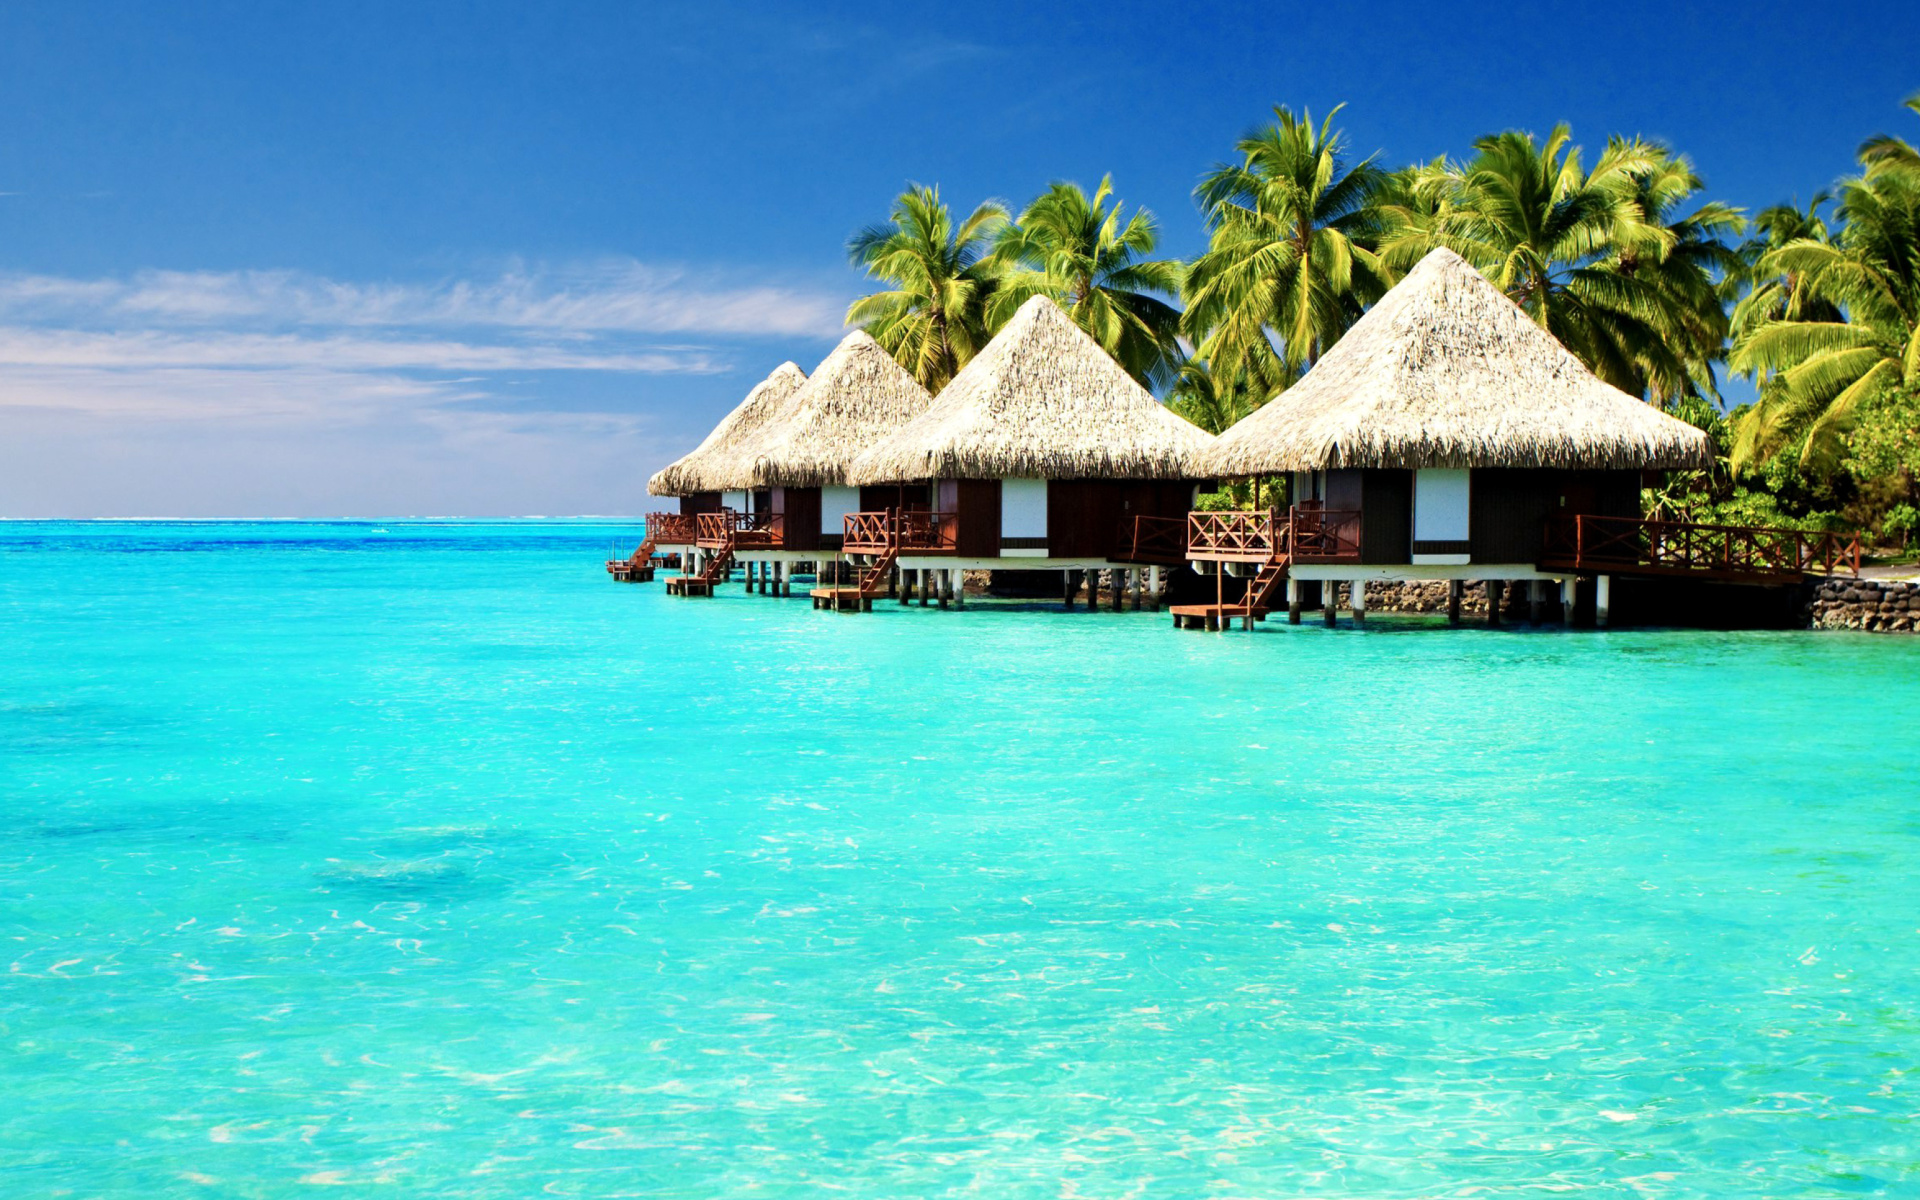 Maldives Islands best Destination for Honeymoon screenshot #1 1920x1200